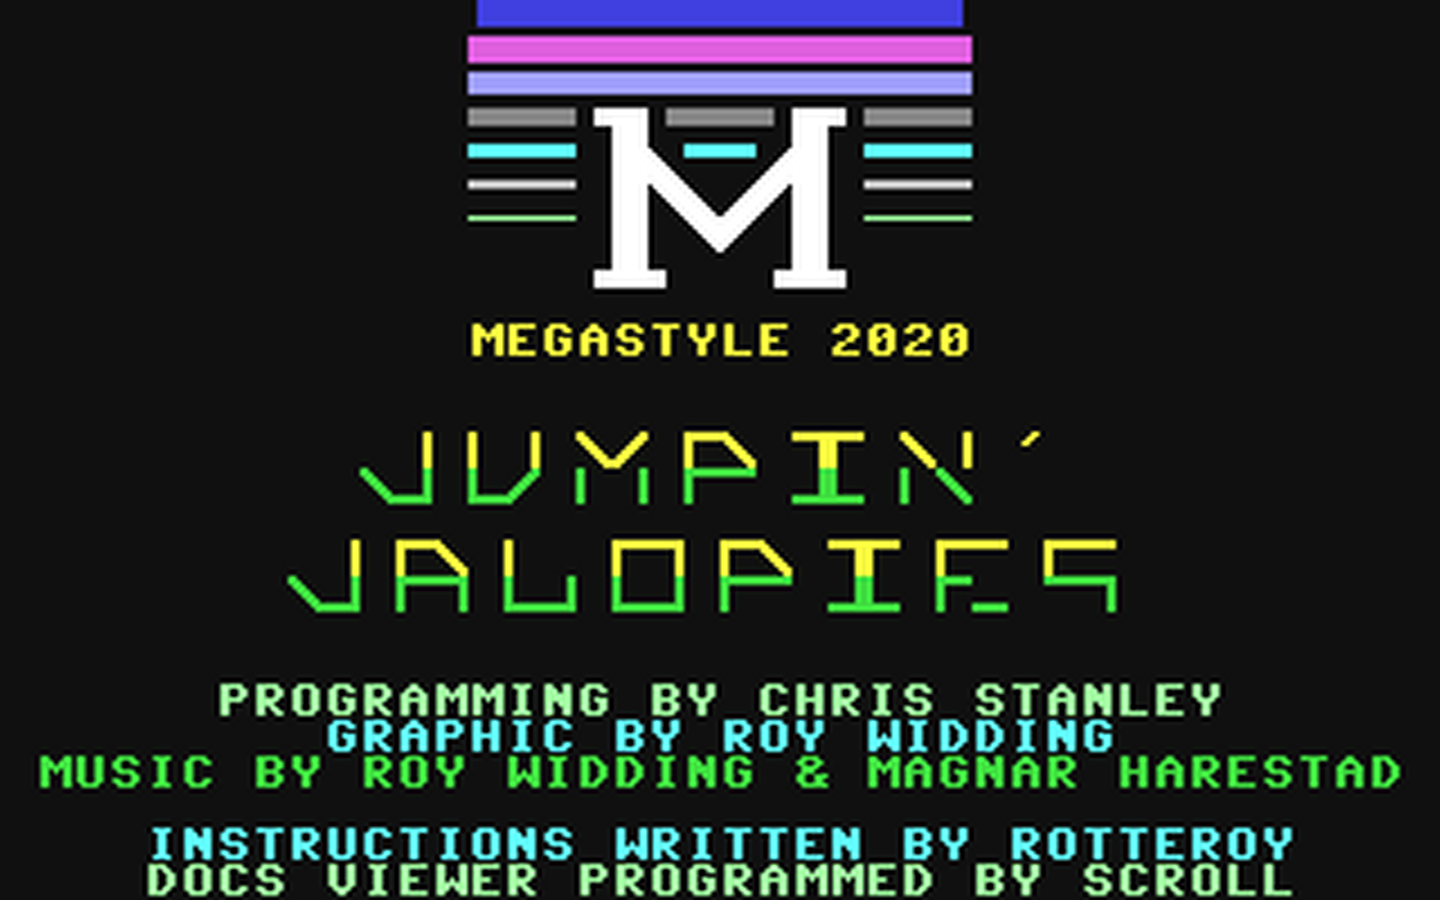 C64 GameBase Jumpin'_Jalopies Reset_Magazine 2020